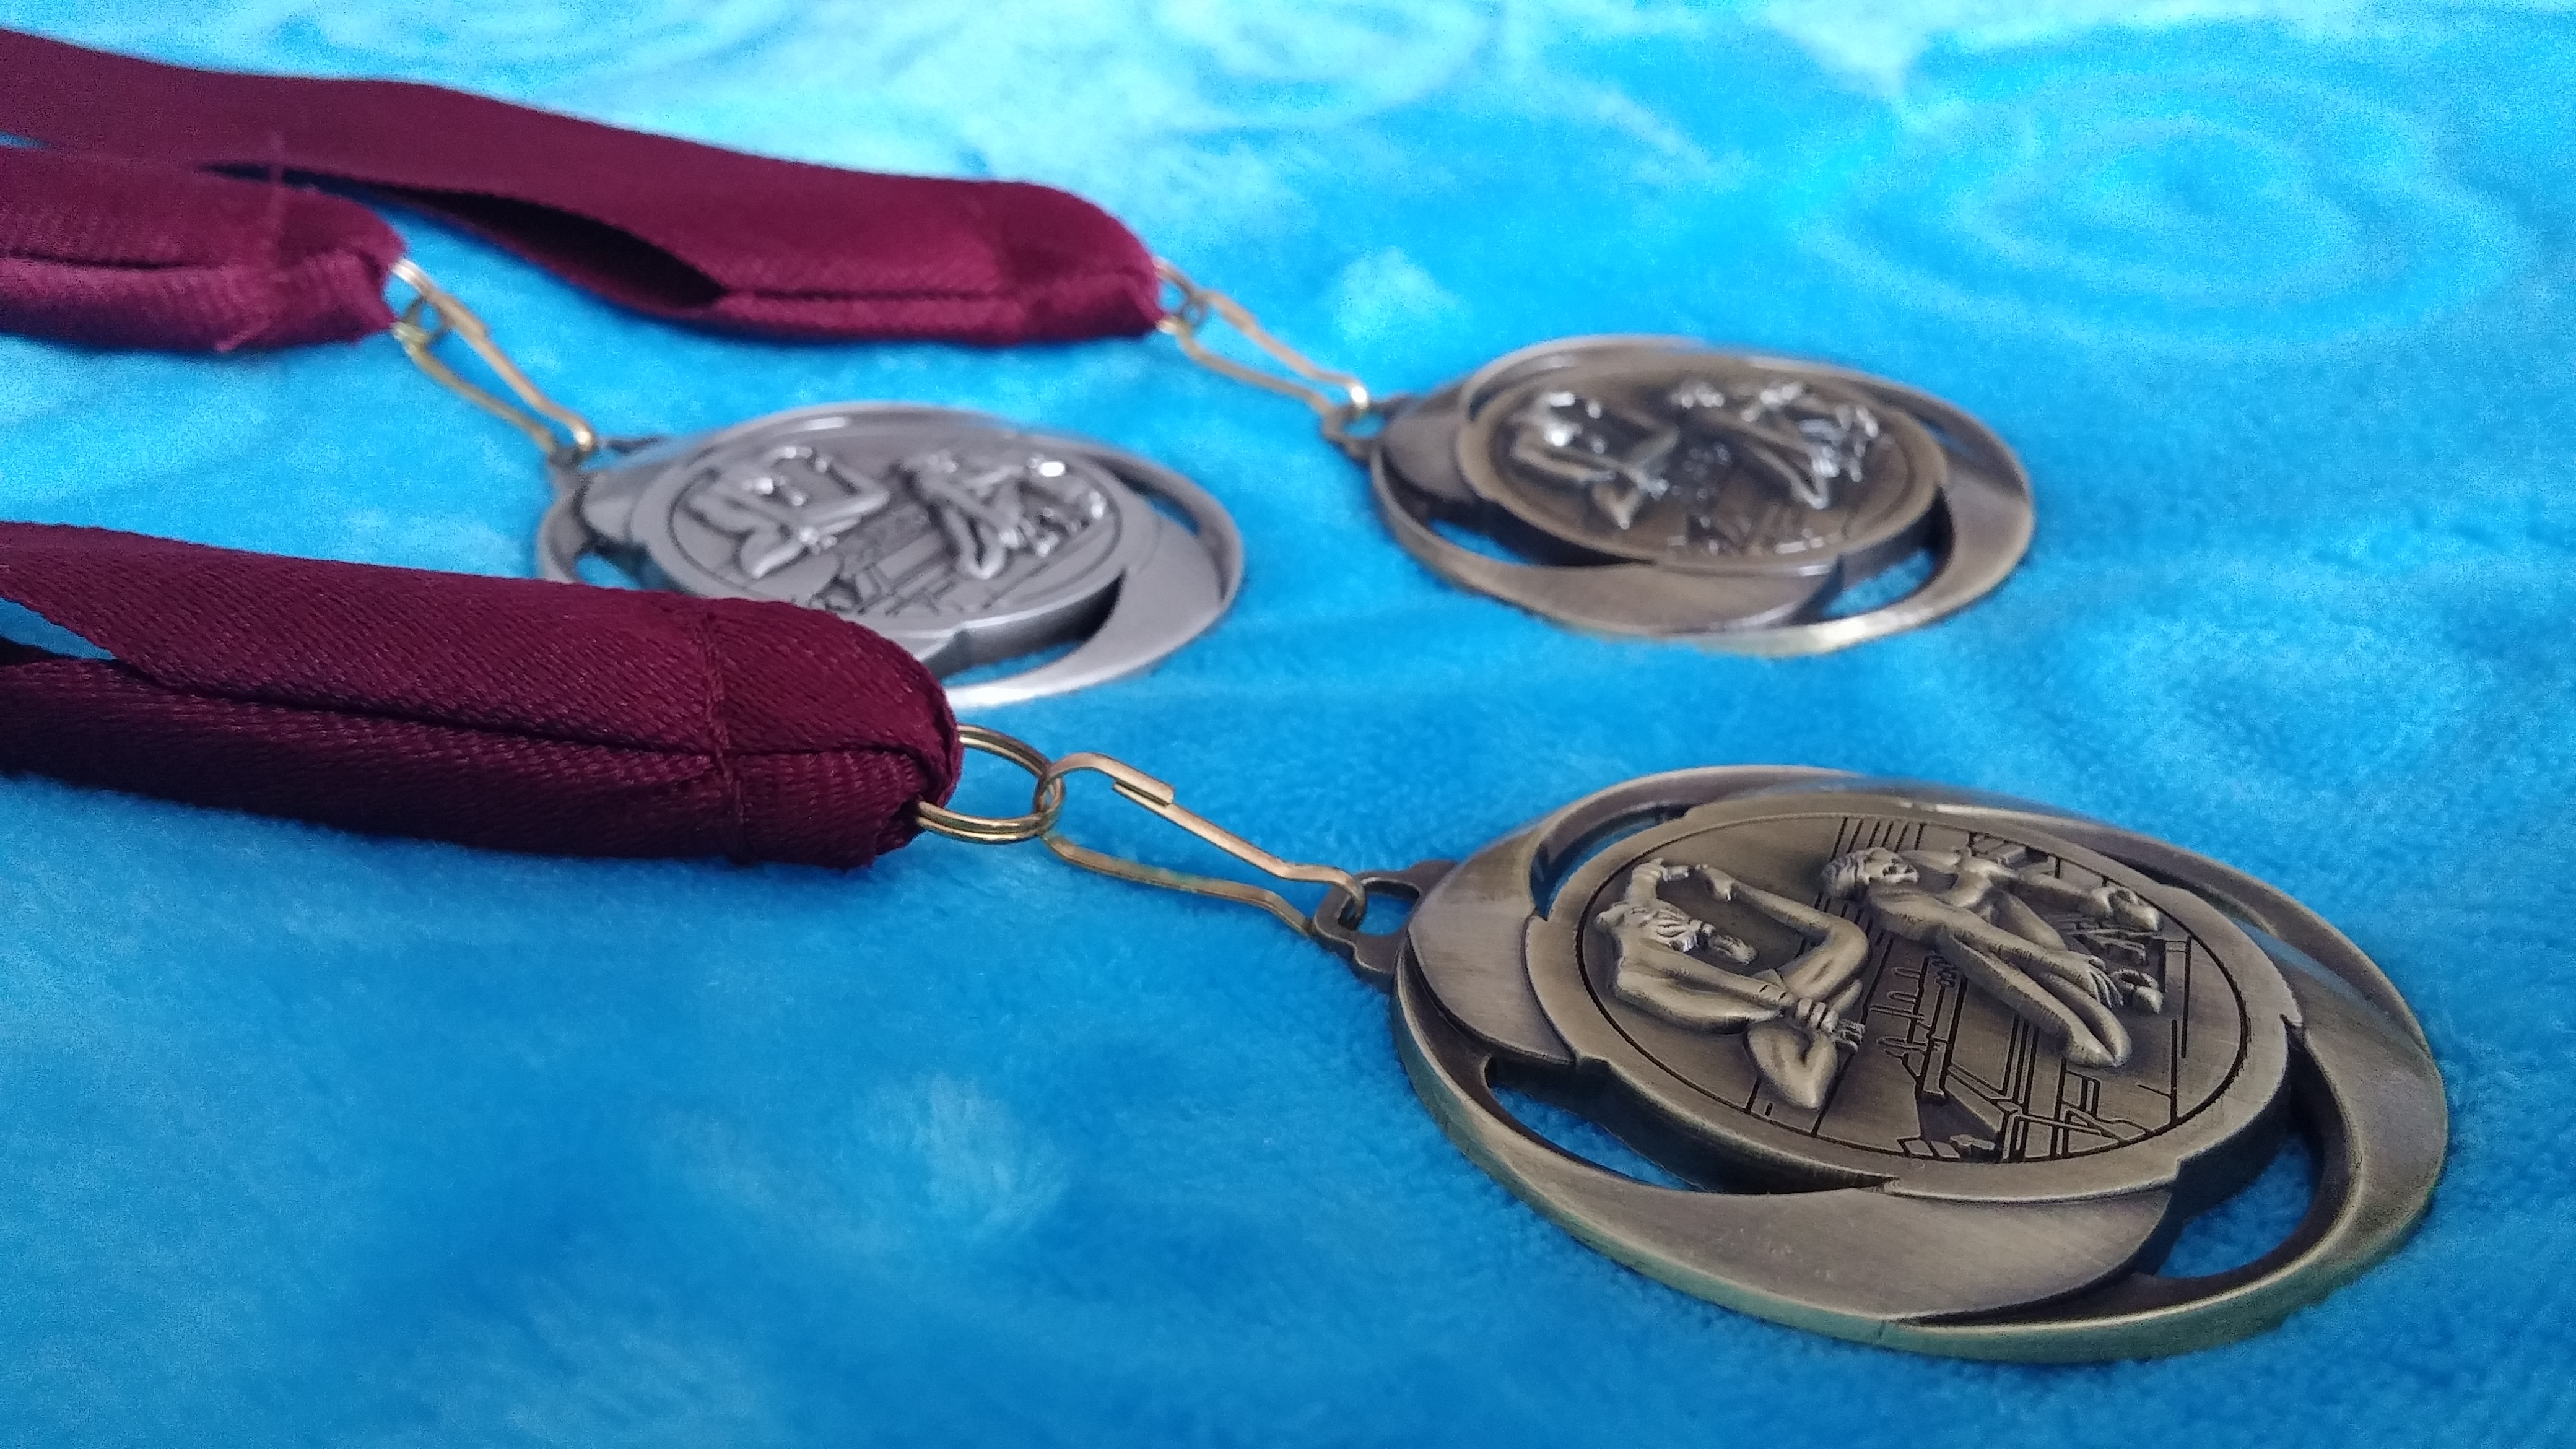 STK Sport - 3 medals at the 2015 Sutton Gymnastics Academy